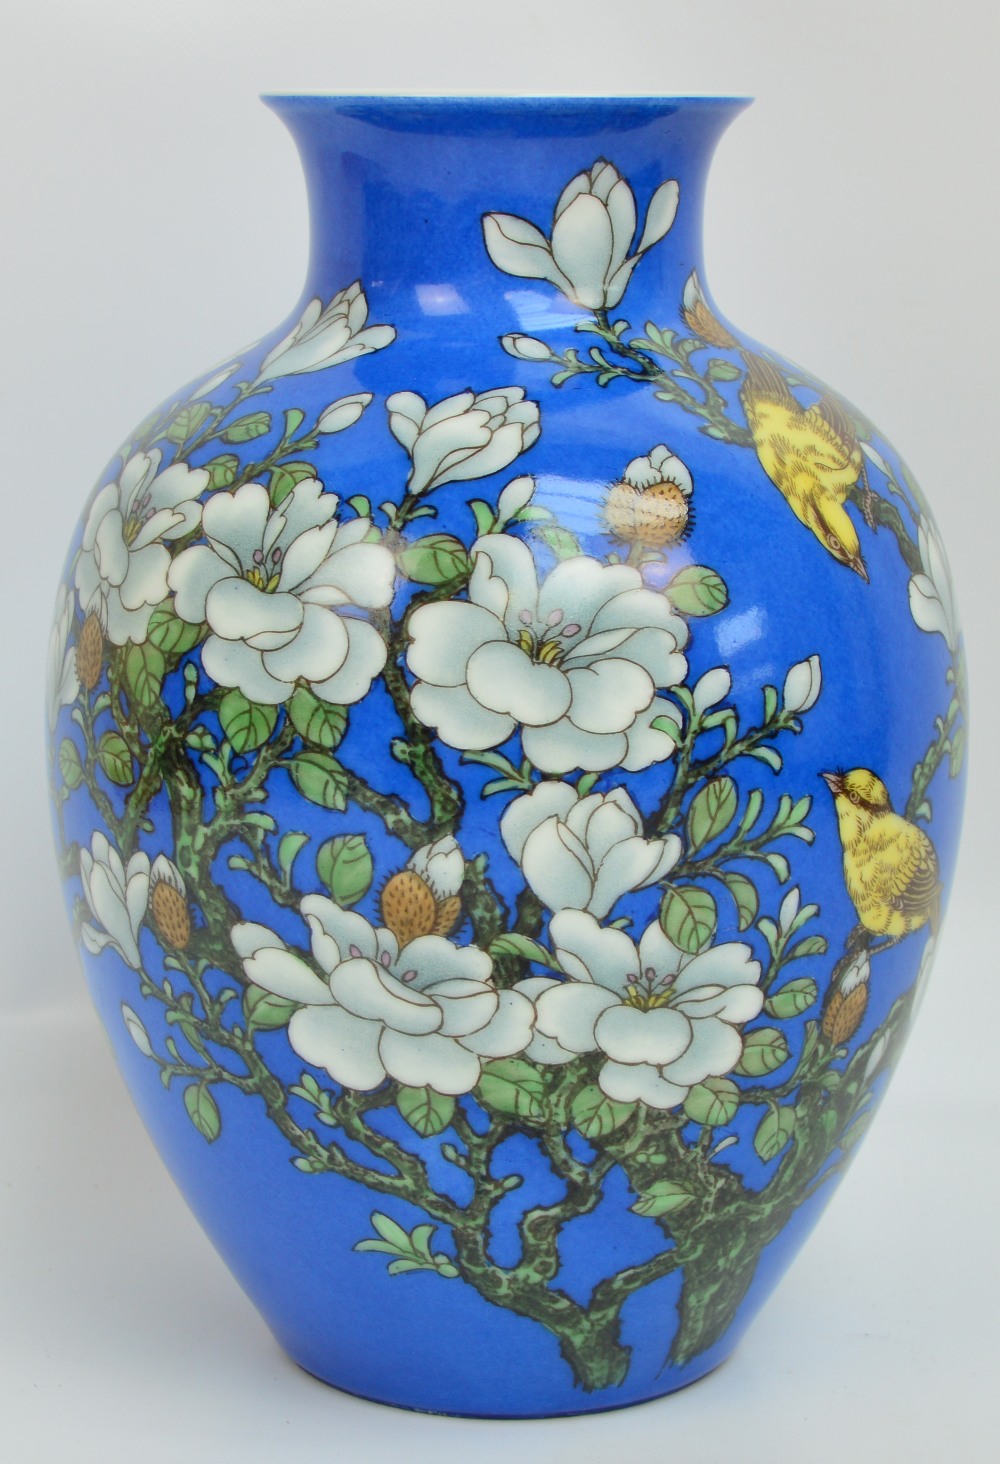 MS LANJUN WANG; a contemporary Chinese porcelain "Magnolia" vase produced by Lanjun Wang 2006,